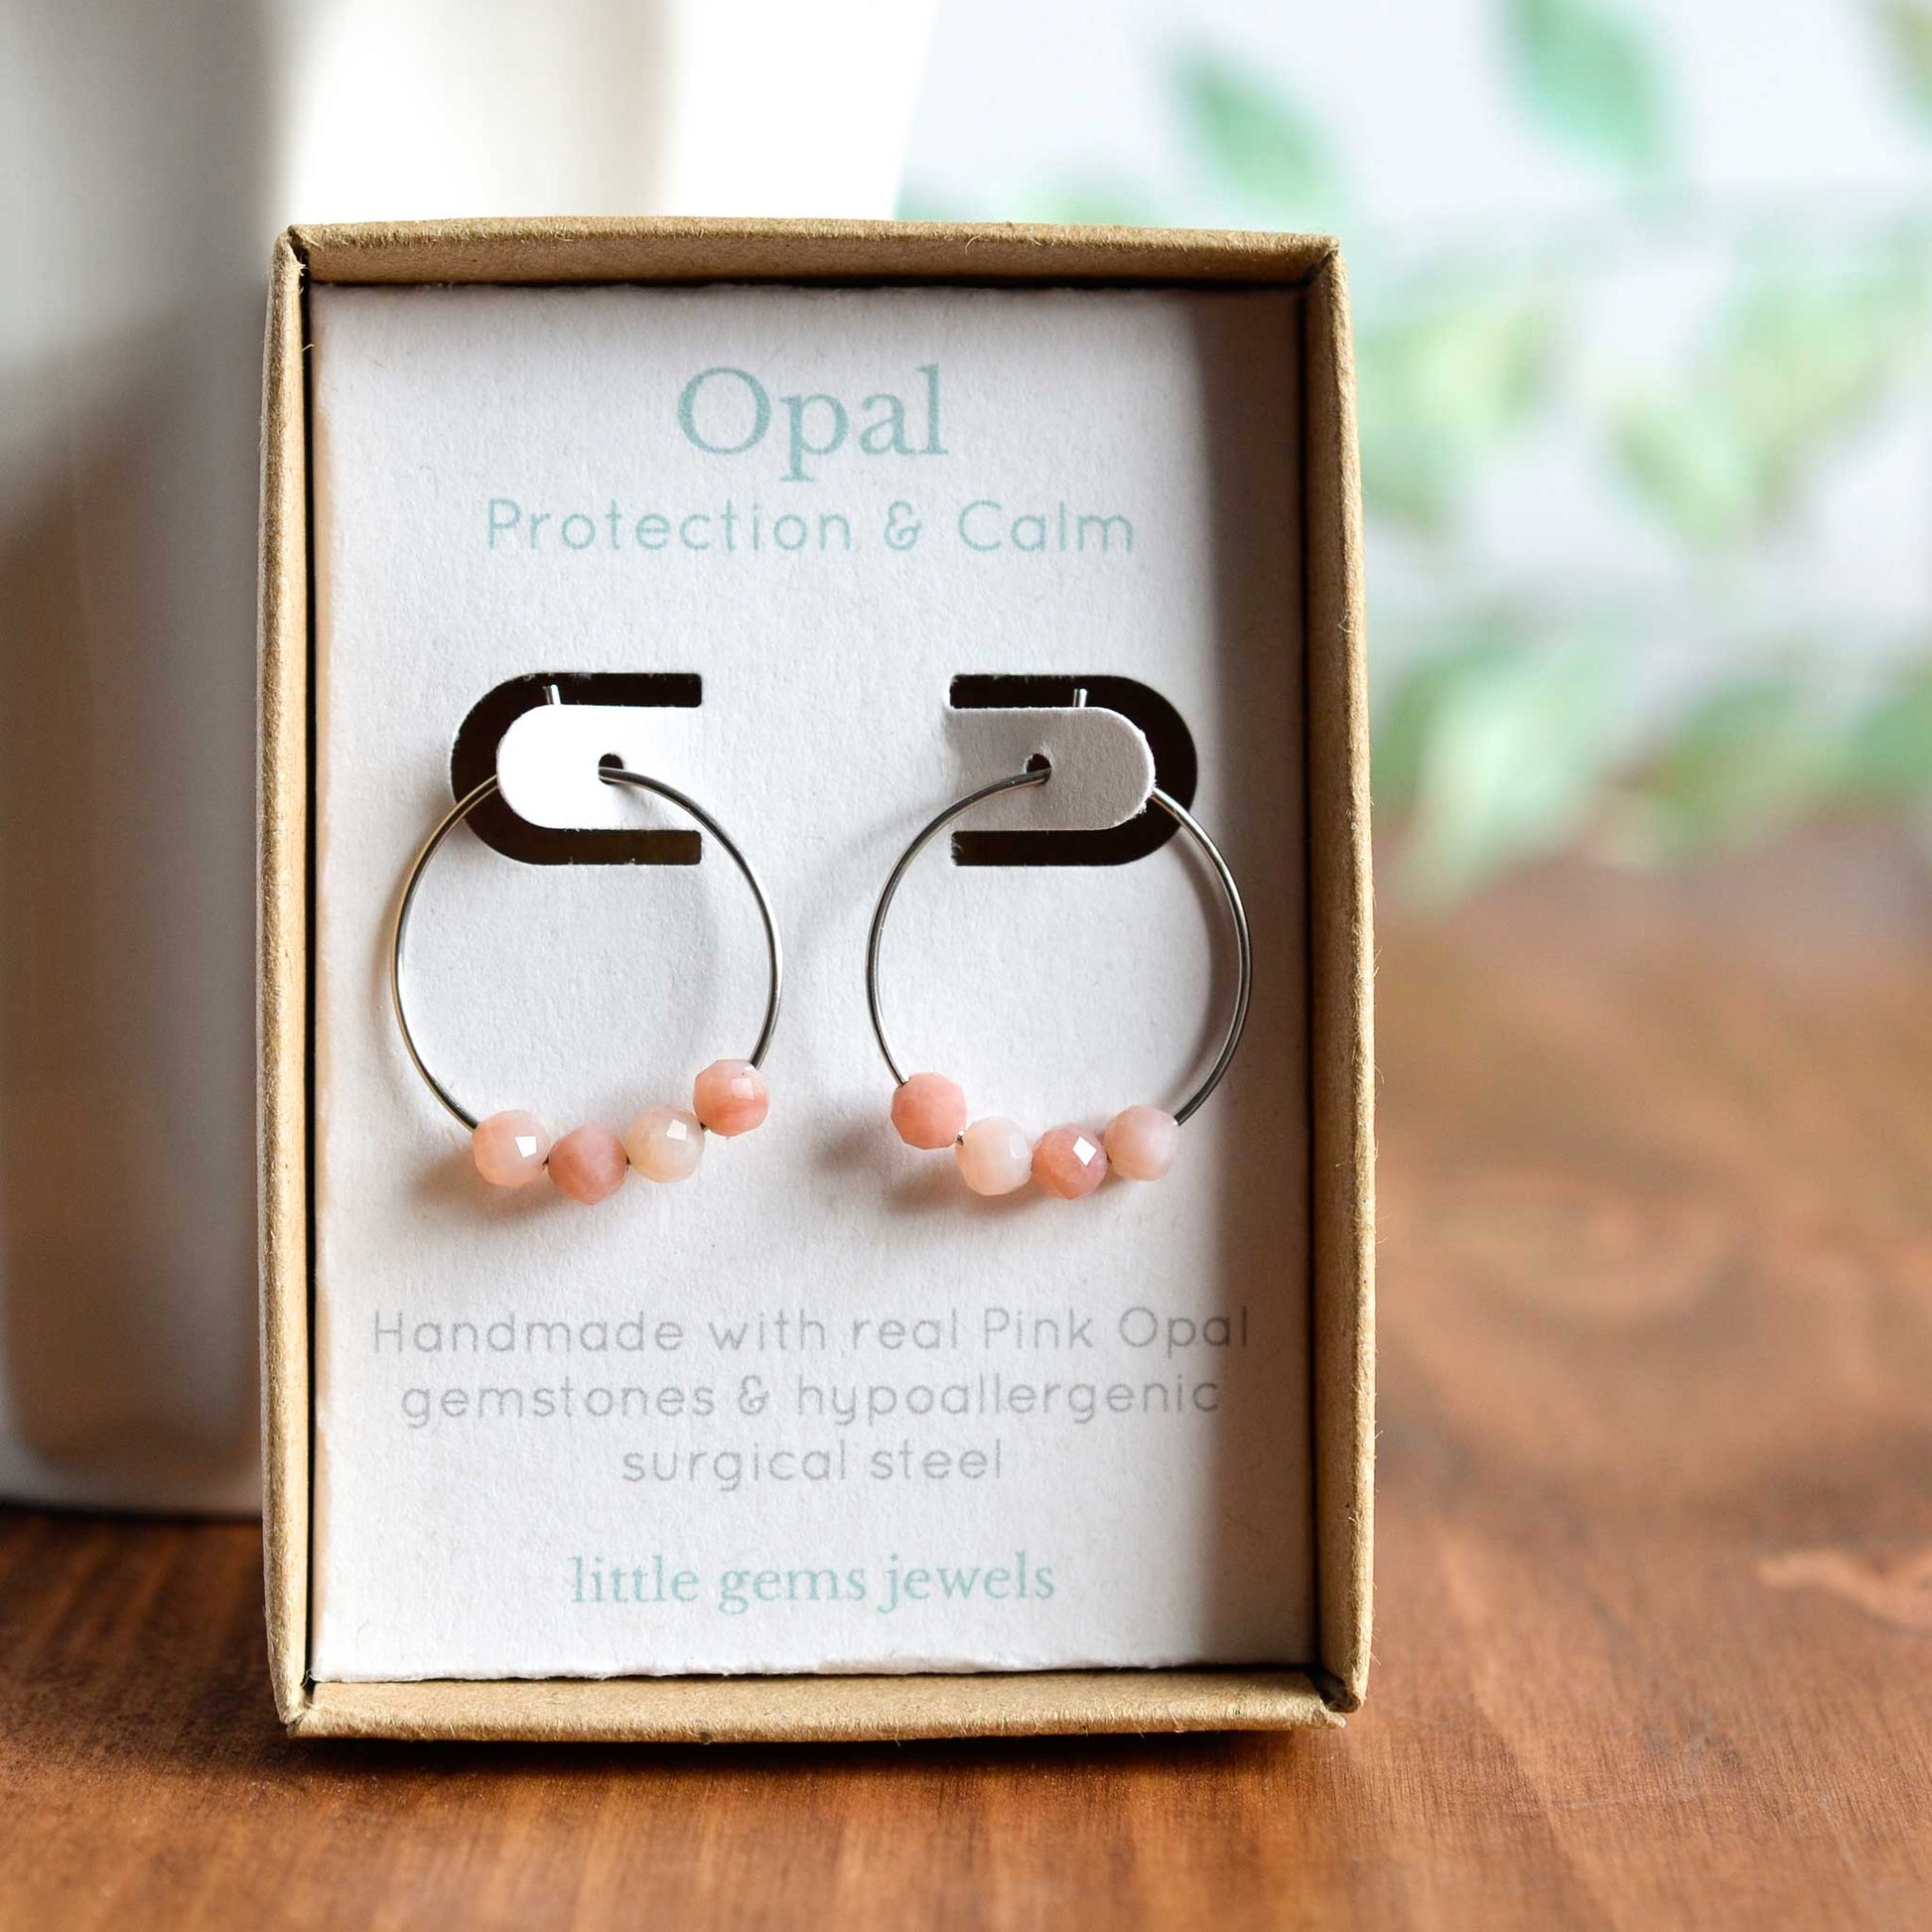 Pink Opal gemstone hoop earrings in eco friendly gift box